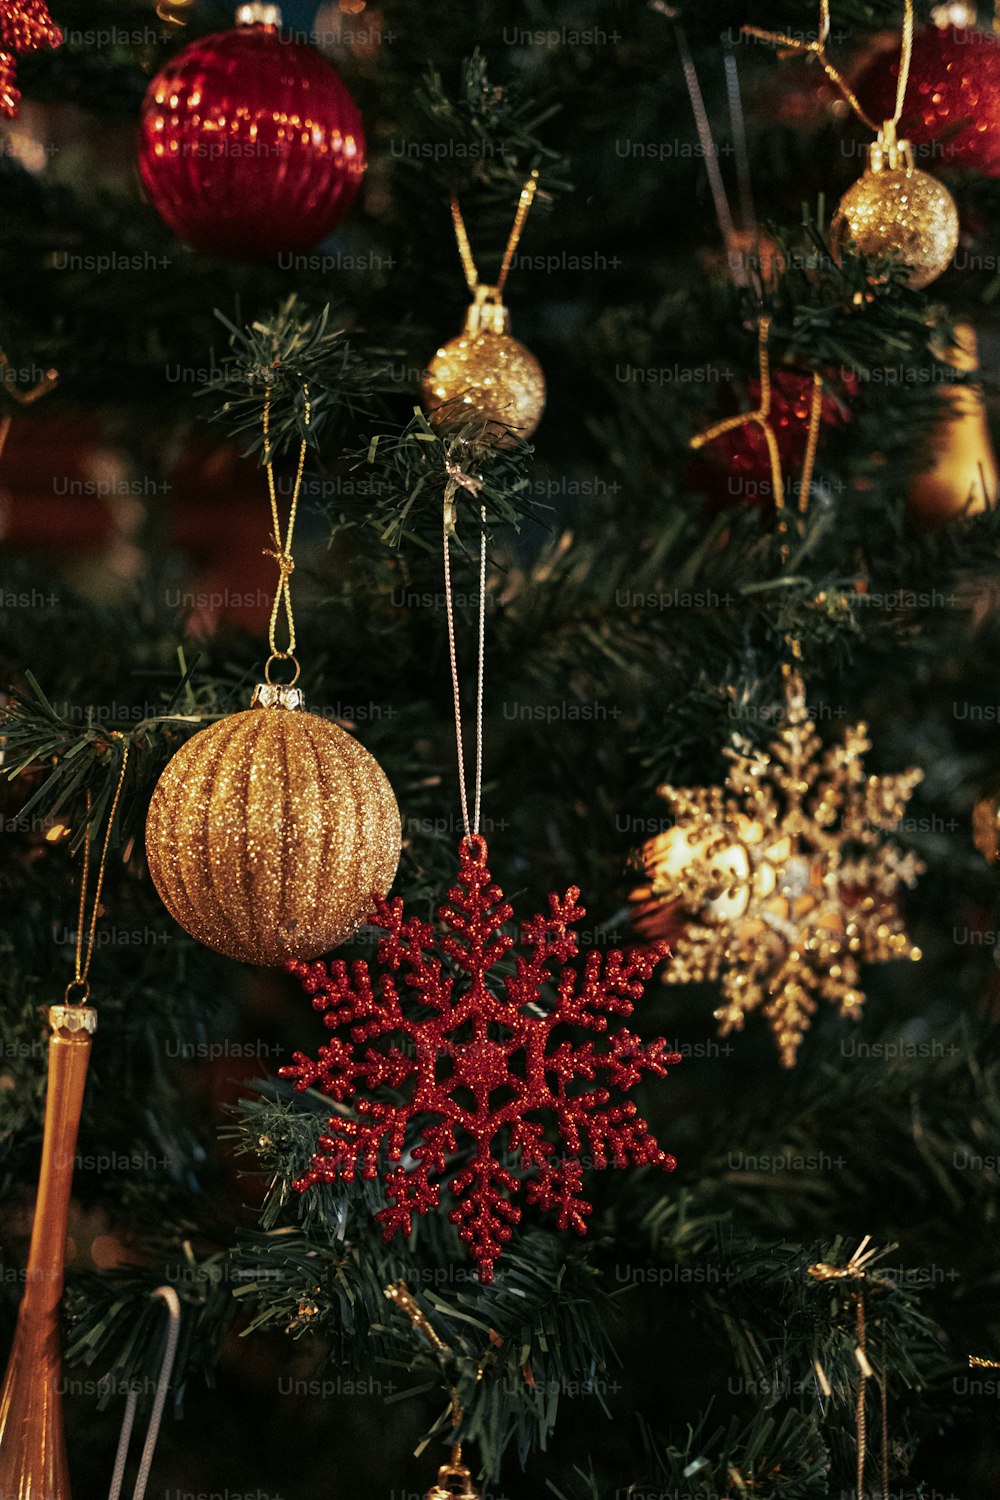 Ein mit Ornamenten geschmückter Weihnachtsbaum